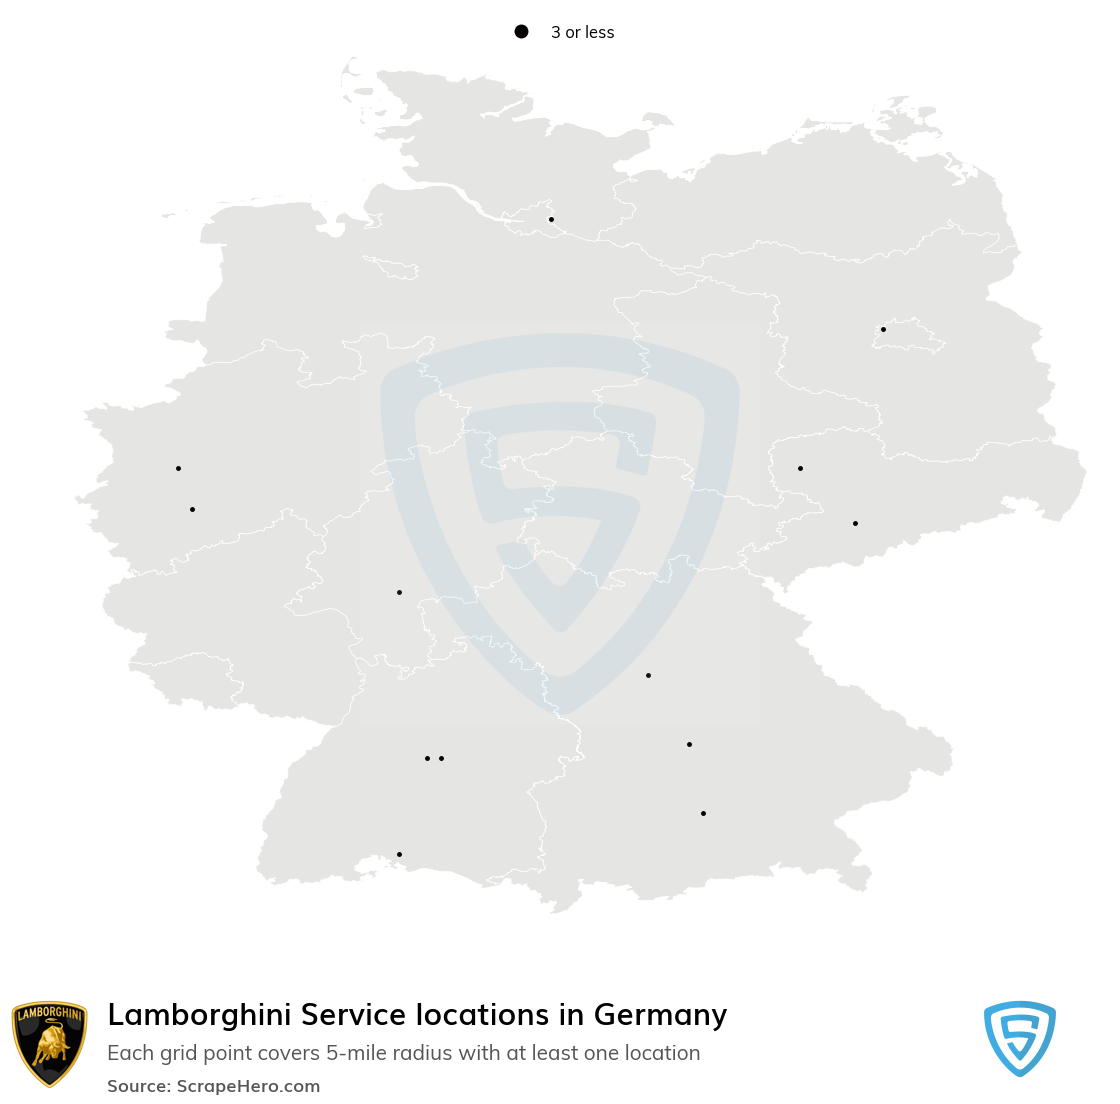 Lamborghini Service locations